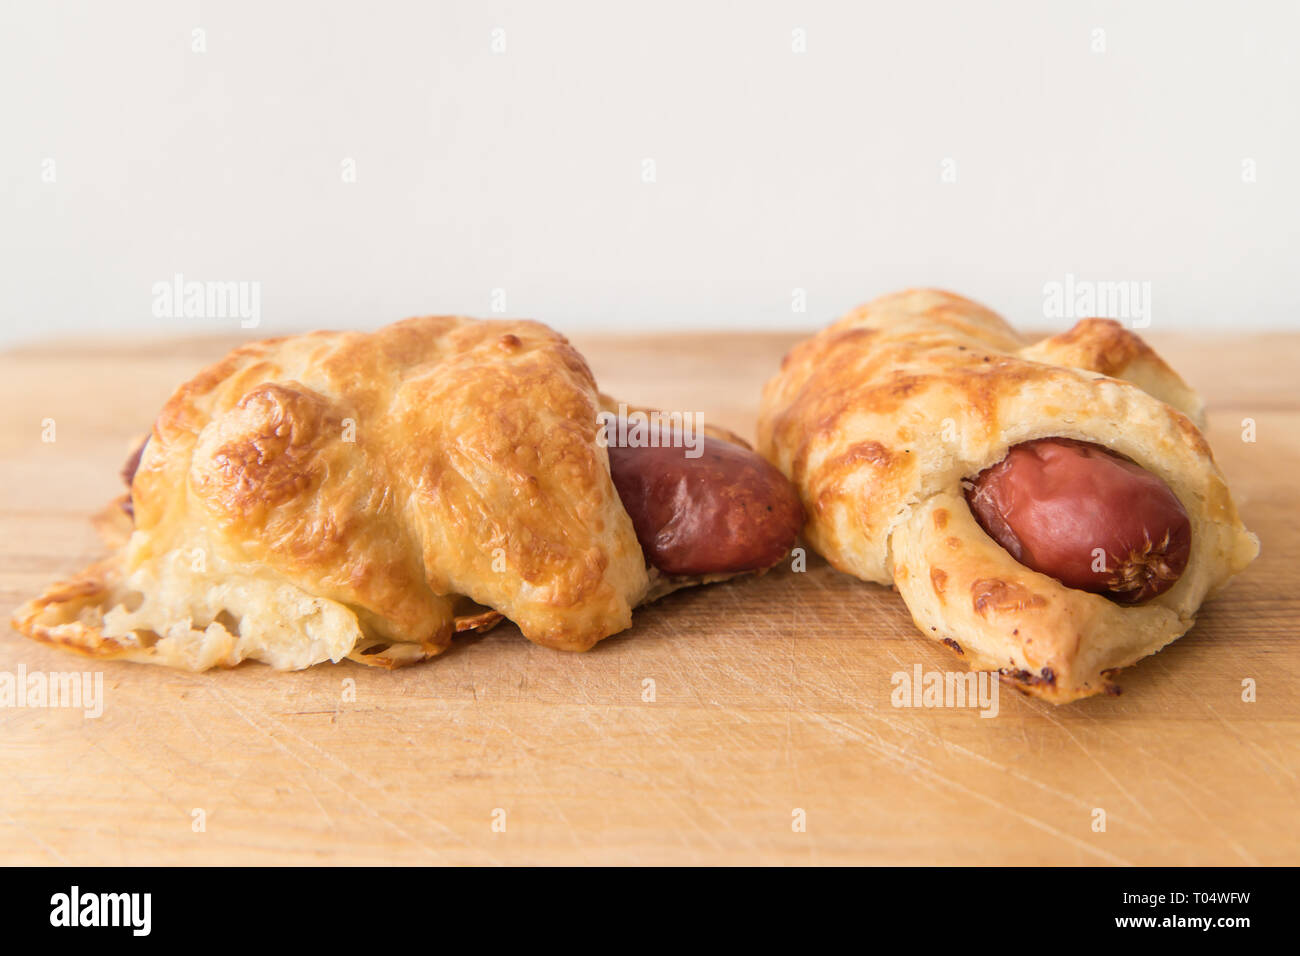 Eine herzhafte Tschechische oder Slowakische snack Croissant s párkem. Ein Wiener oder Frankfurter Würstchen in Blätterteig verpackt. Stockfoto